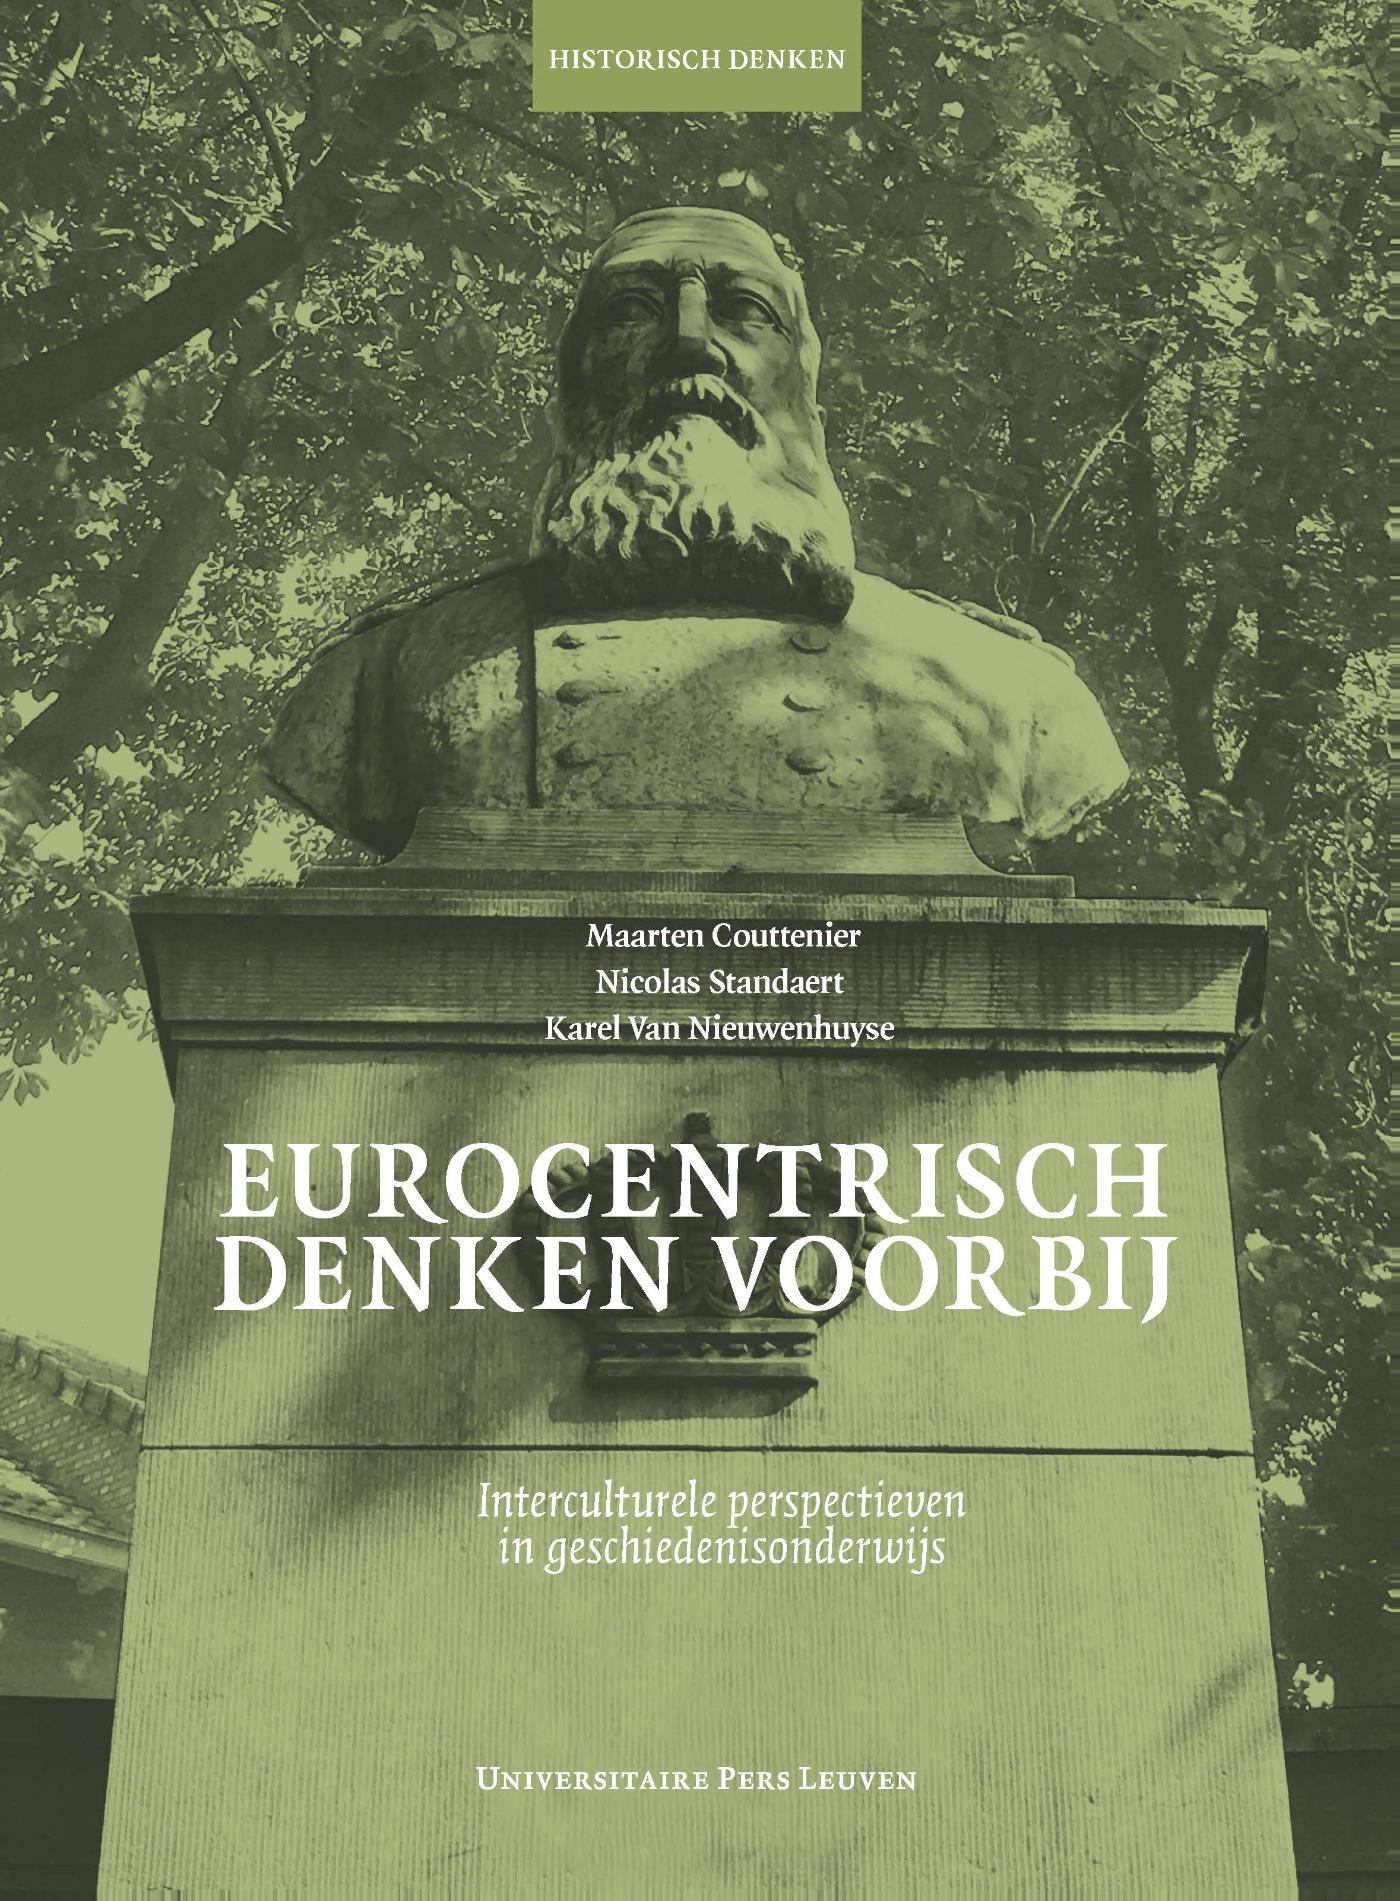 Eurocentrisch denken voorbij (Ebook)